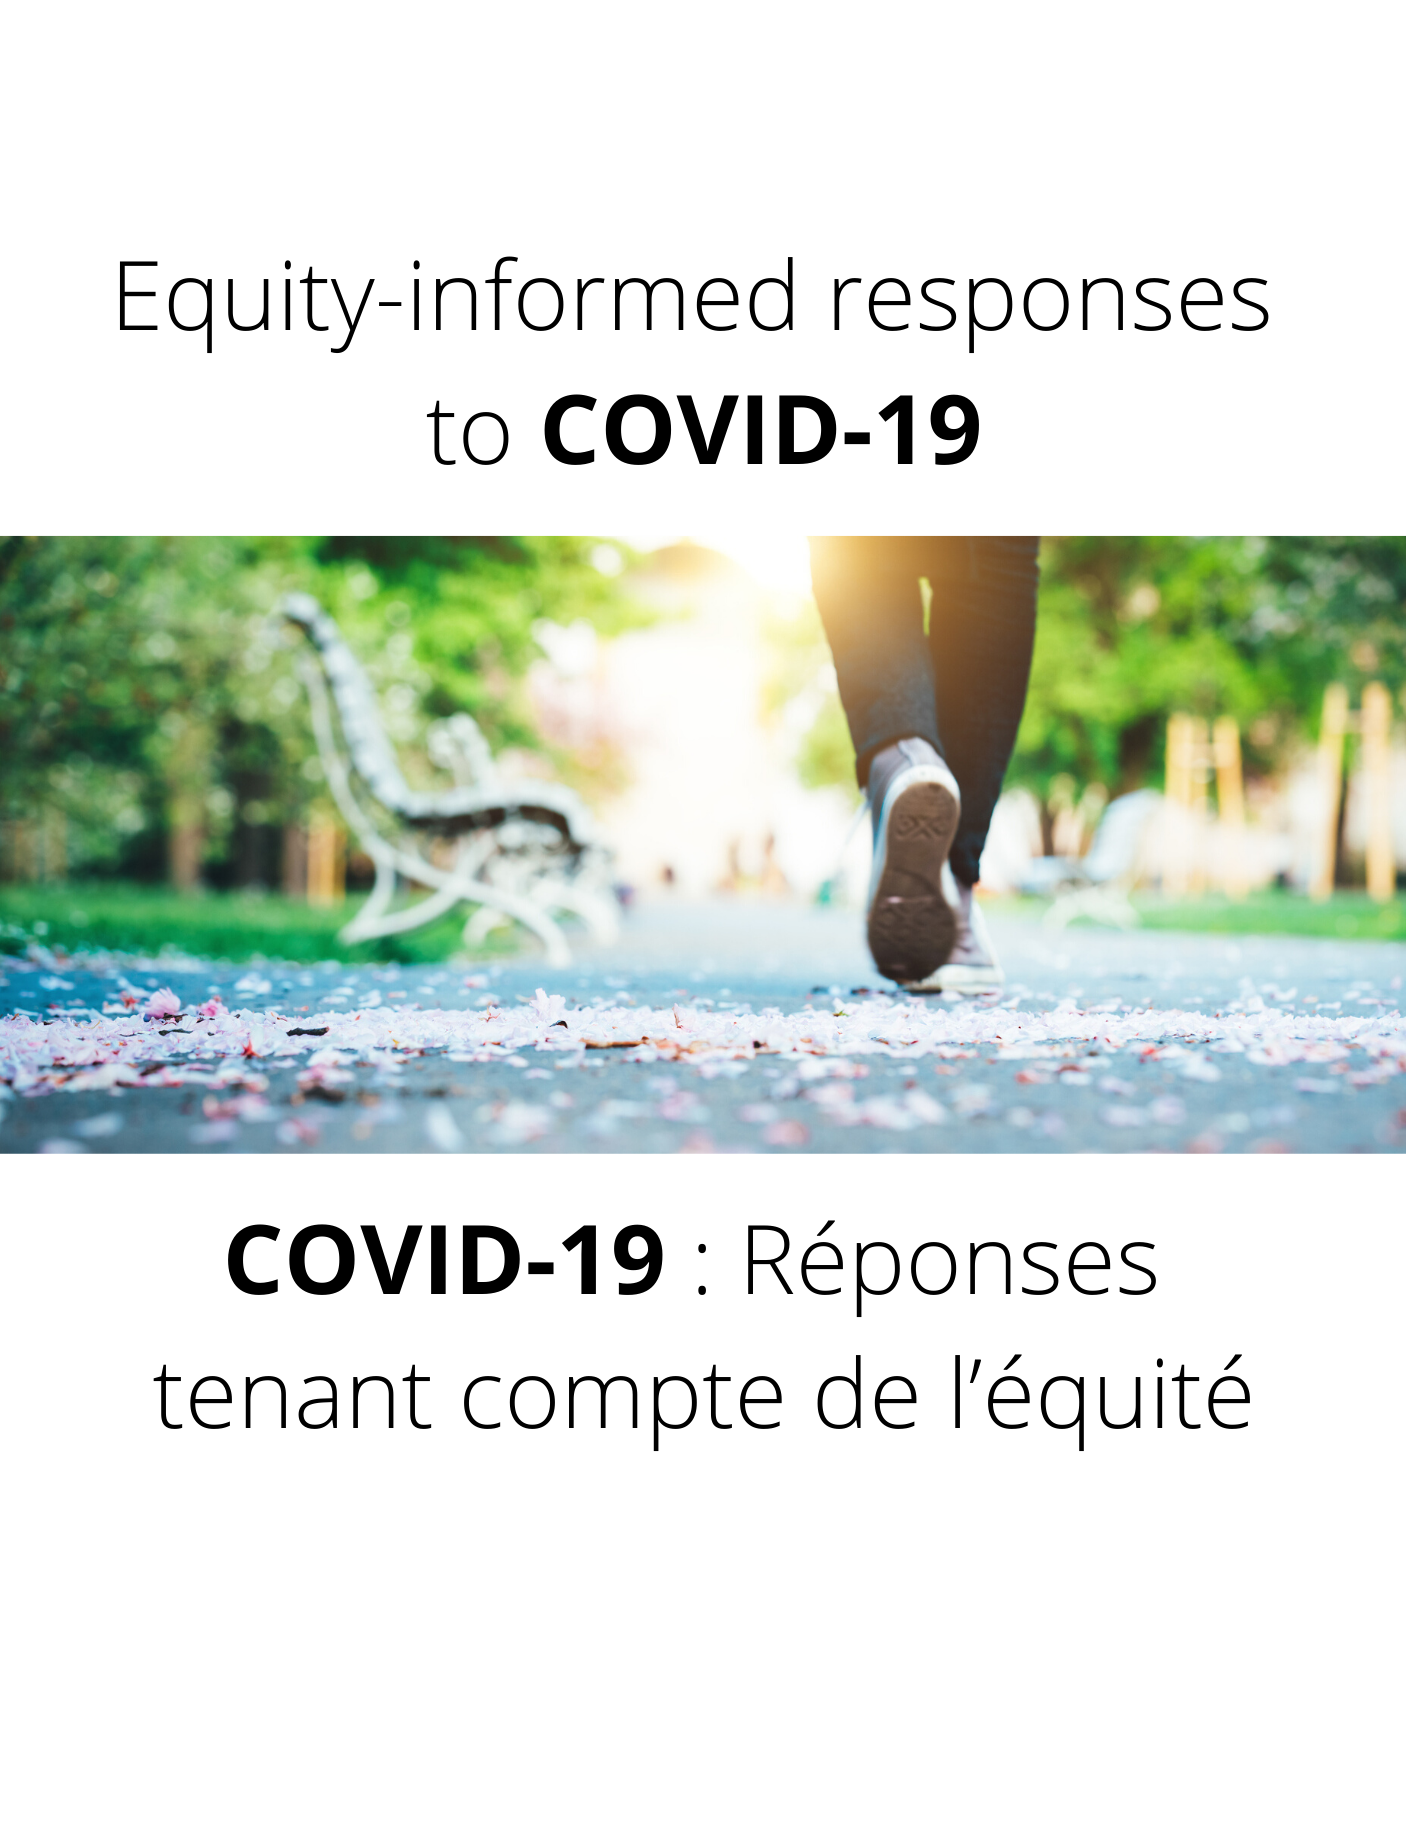 Logement et inégalités sociales de santé en temps de COVID-19 : des stratégies pour des logements abordables et de qualité